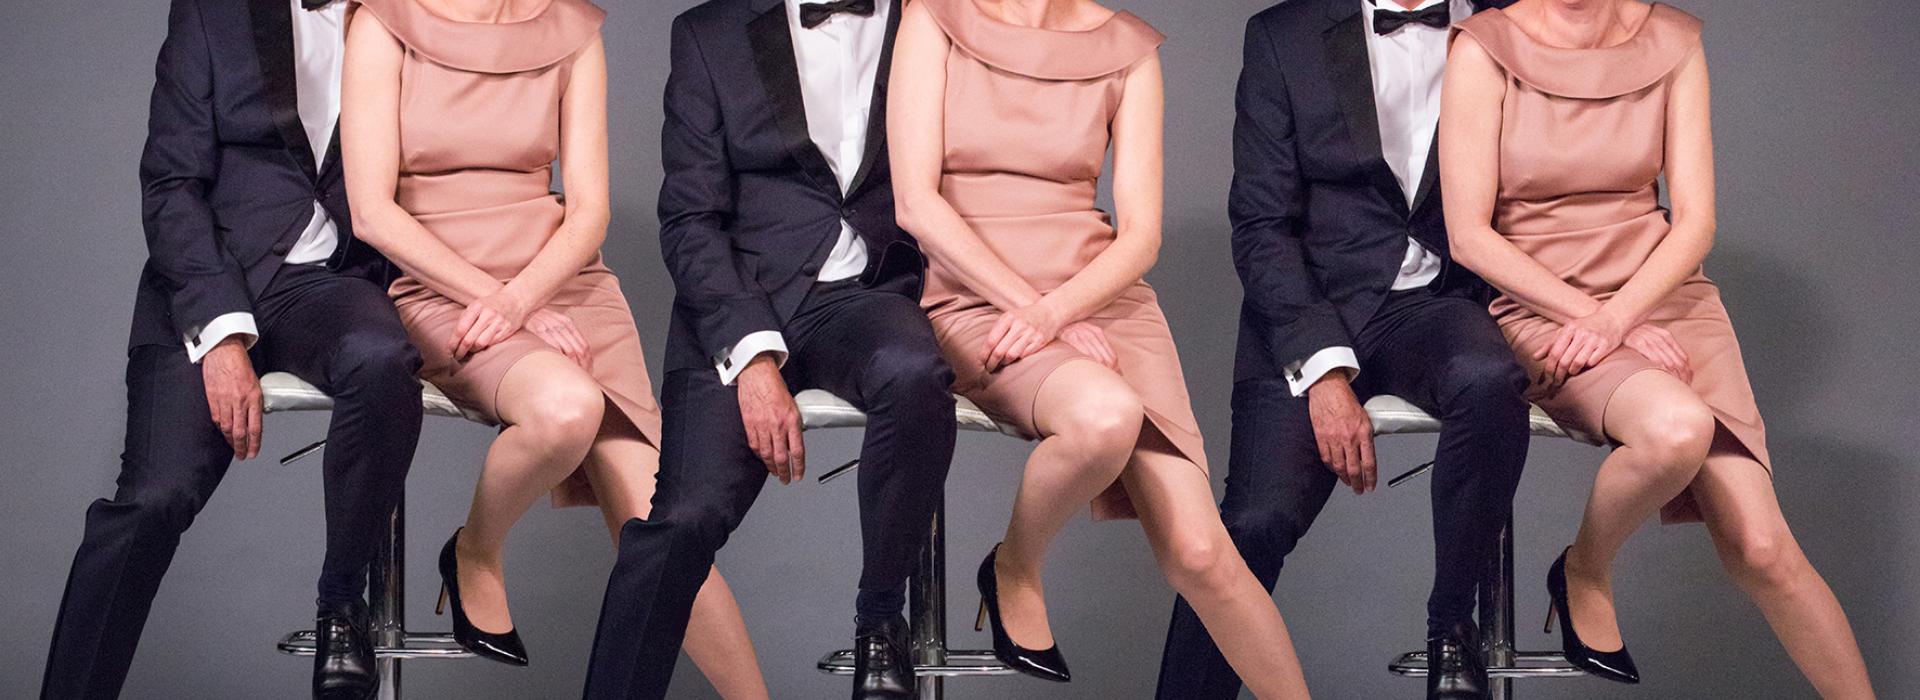 La photo d'un homme et une femme est répétée trois fois. Ils sont sur un tabouret en faisant différentes expressions faciales. Il est en costume, elle est en robe rose.